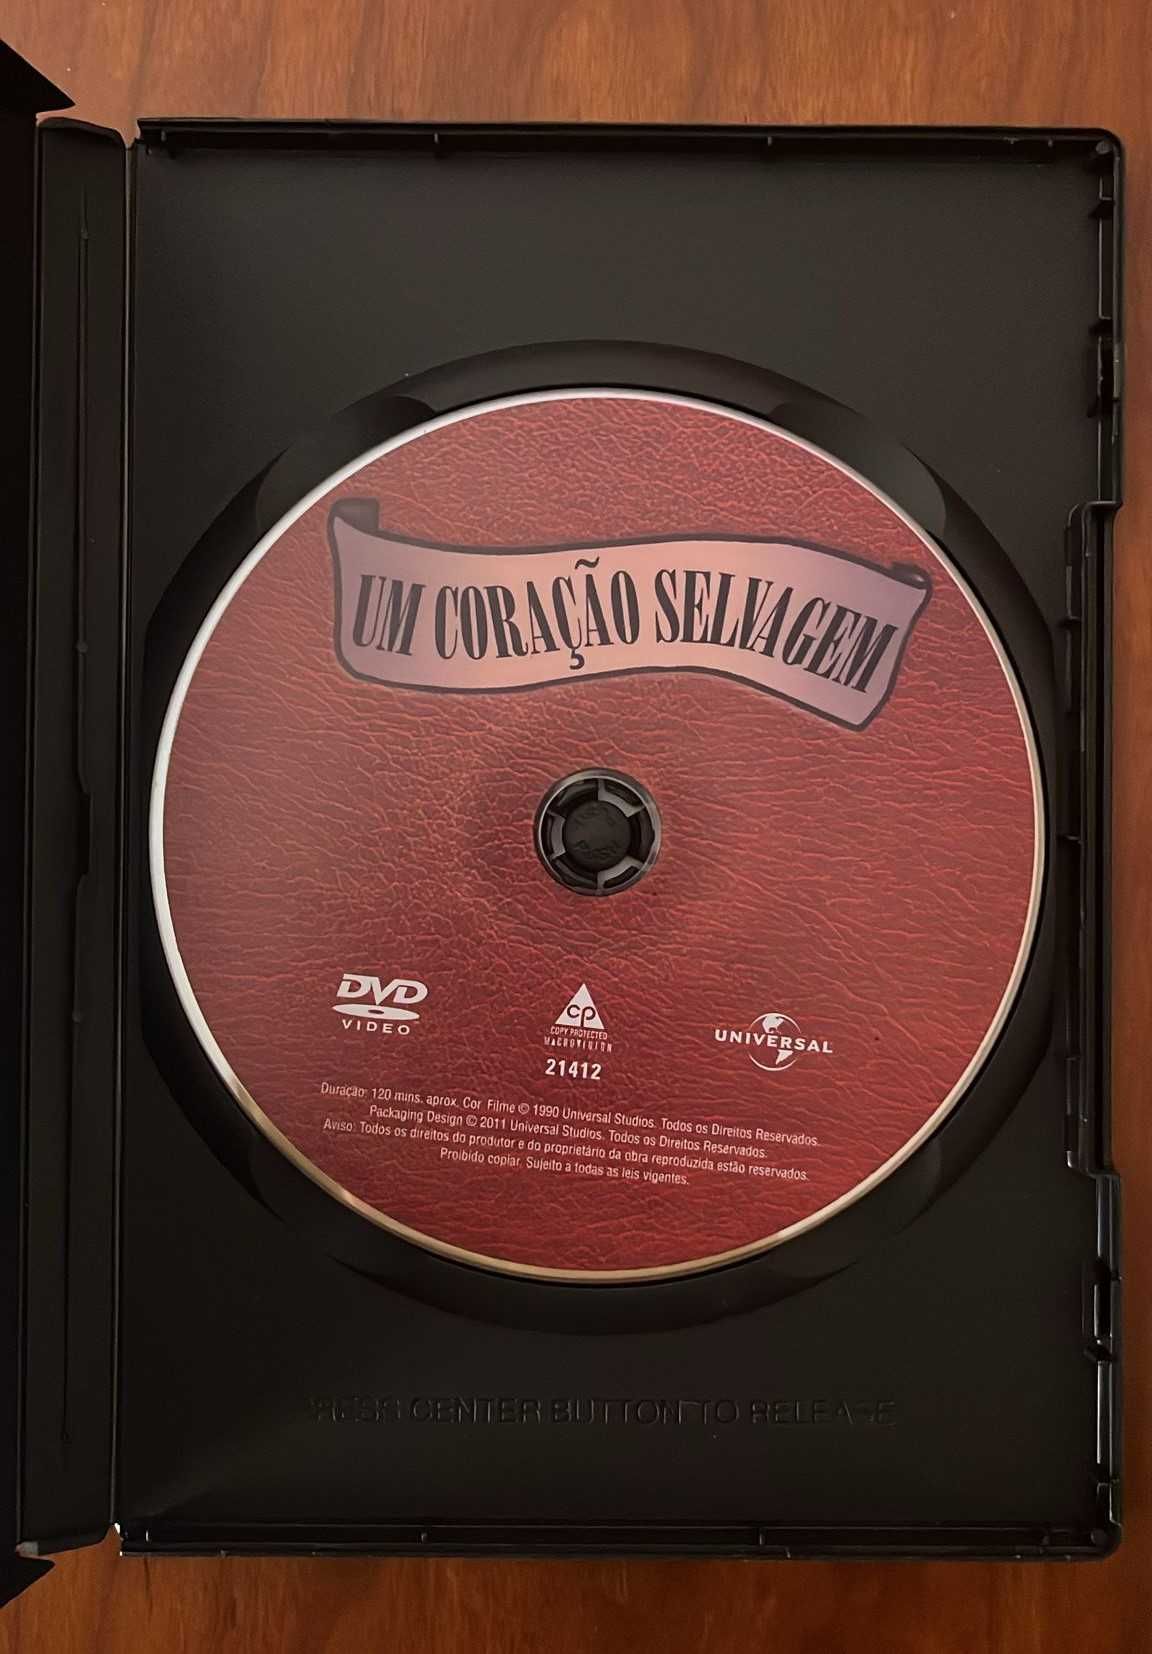 DVD "Um coração selvagem" de David Lynch